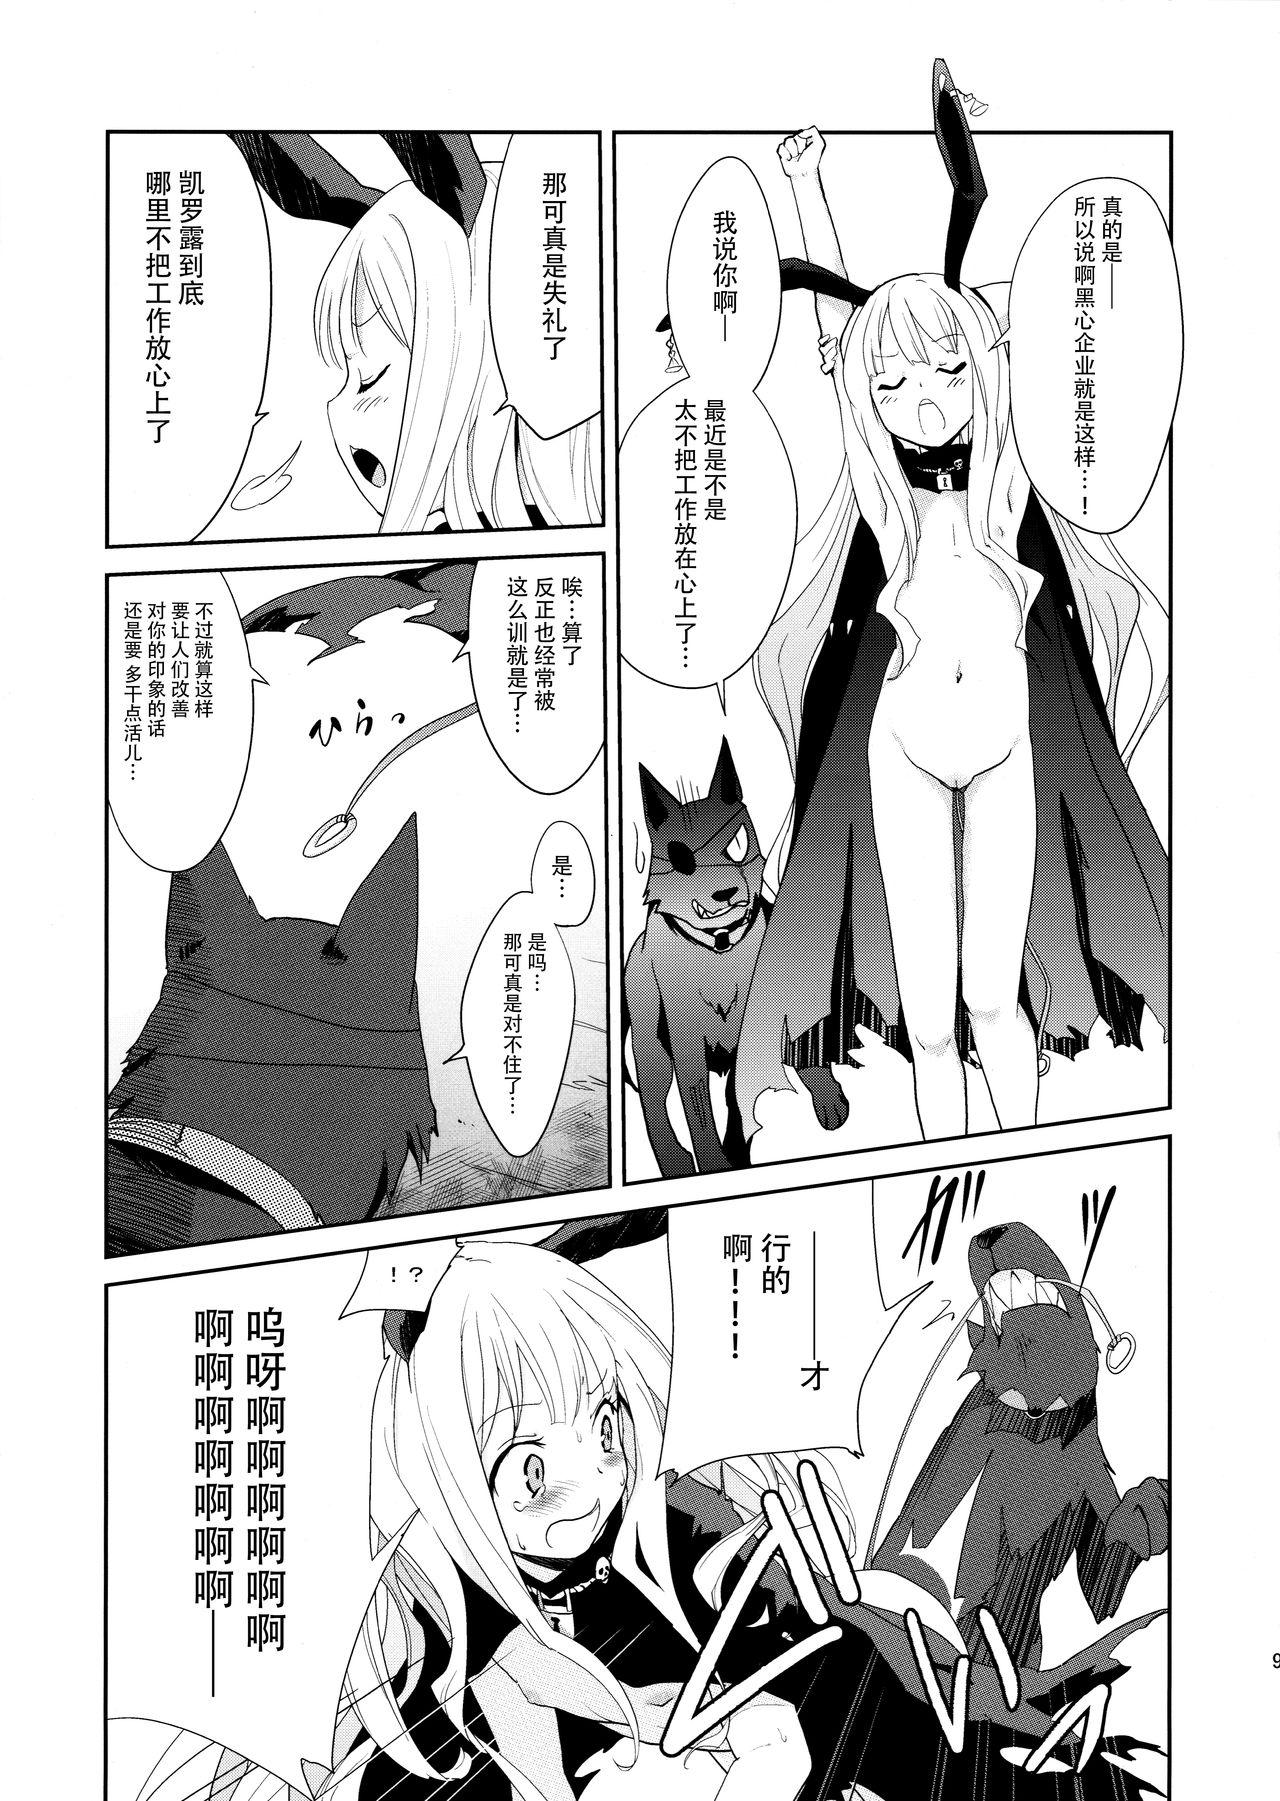 Puba Usagi Rabbit! - Original Bucetinha - Page 10